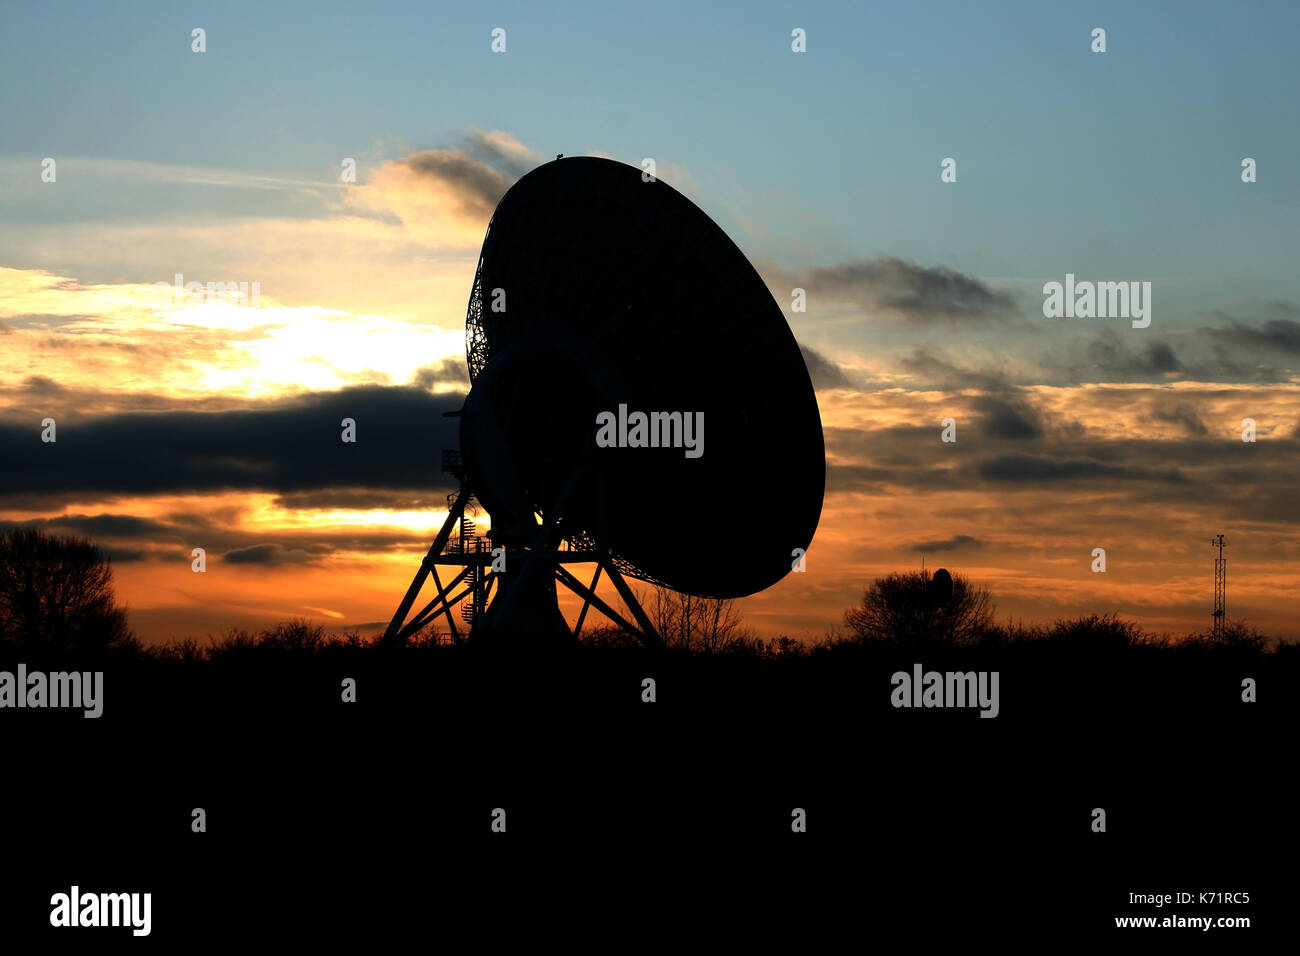 Die MERLIN Radioteleskop bei Sonnenuntergang. Mullard Observatorium liegt im Süden von Cambridge, Großbritannien. Stockfoto